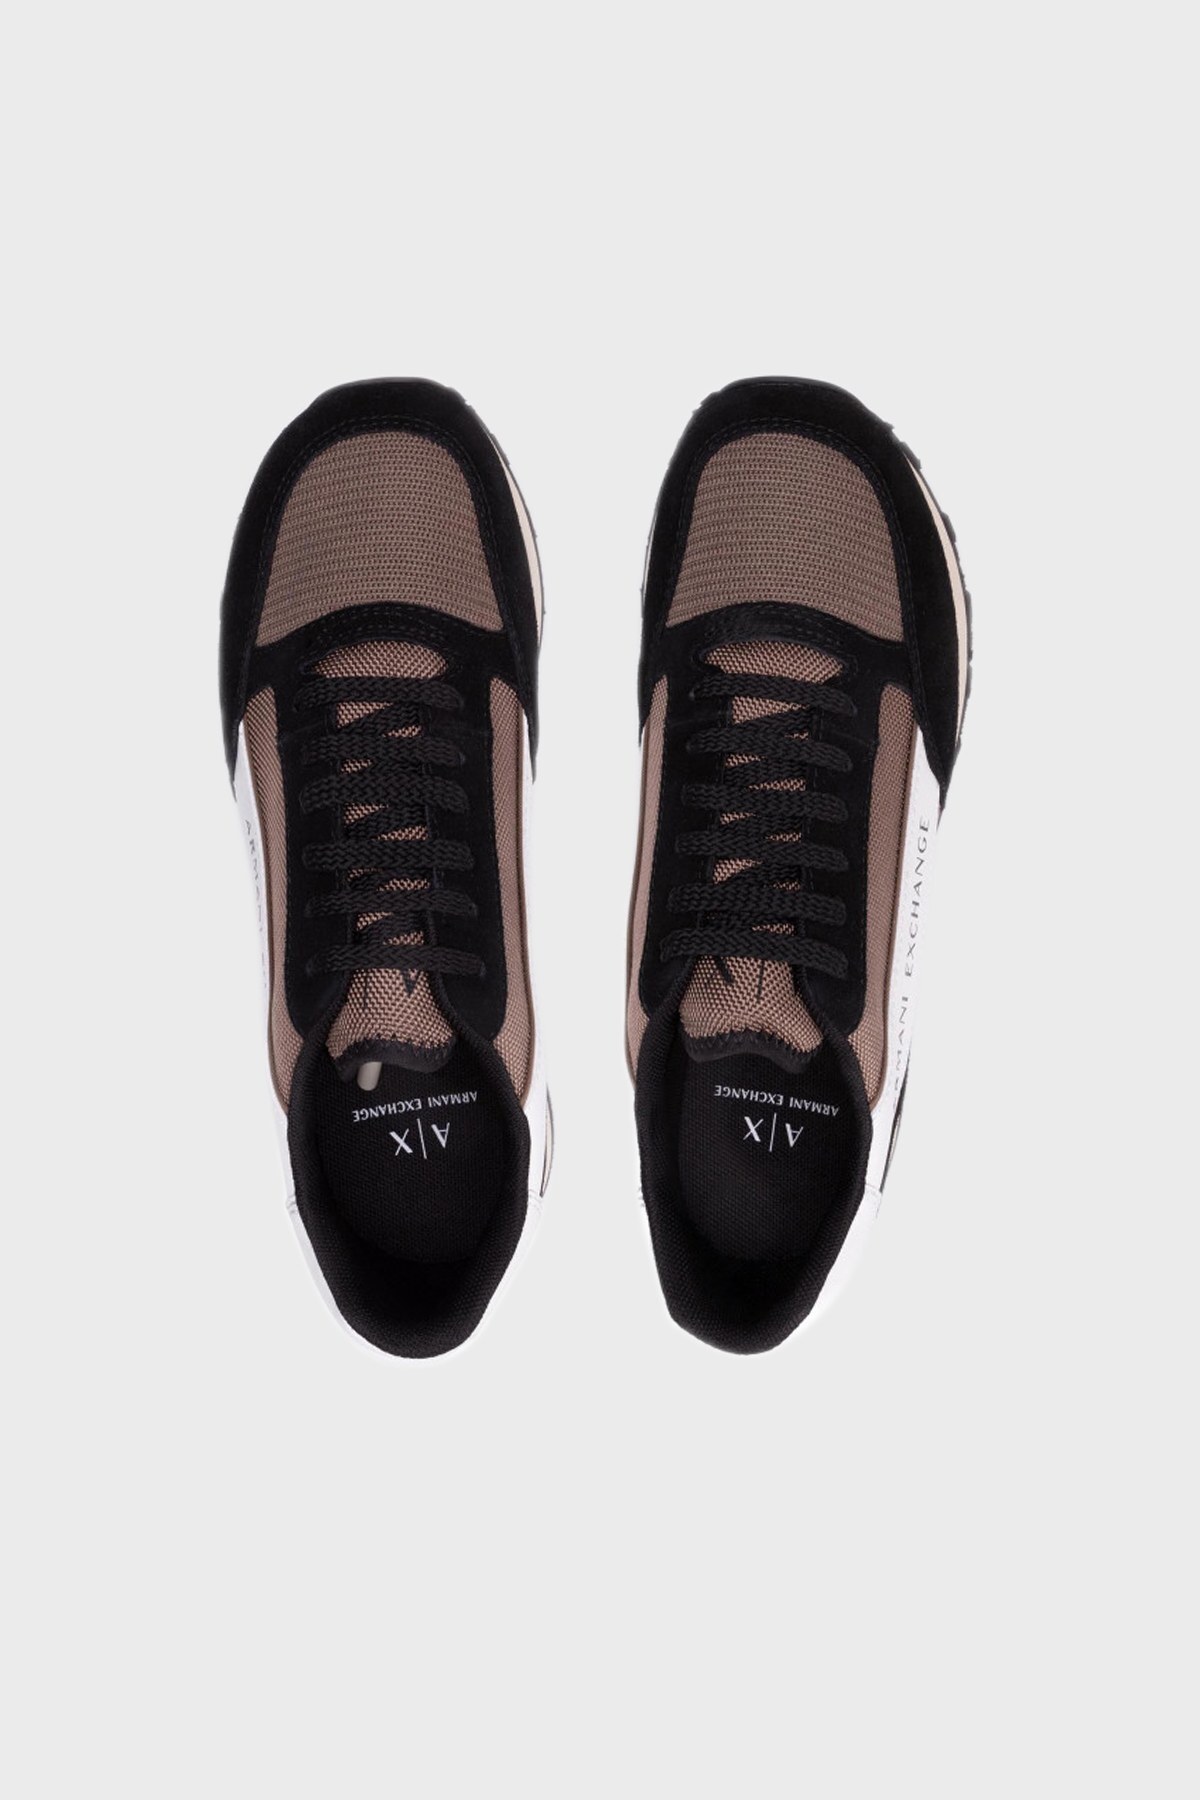 Armani Exchange Logolu Sneaker Erkek Ayakkabı XUX083 XV263 K629 SİYAH-KAHVE